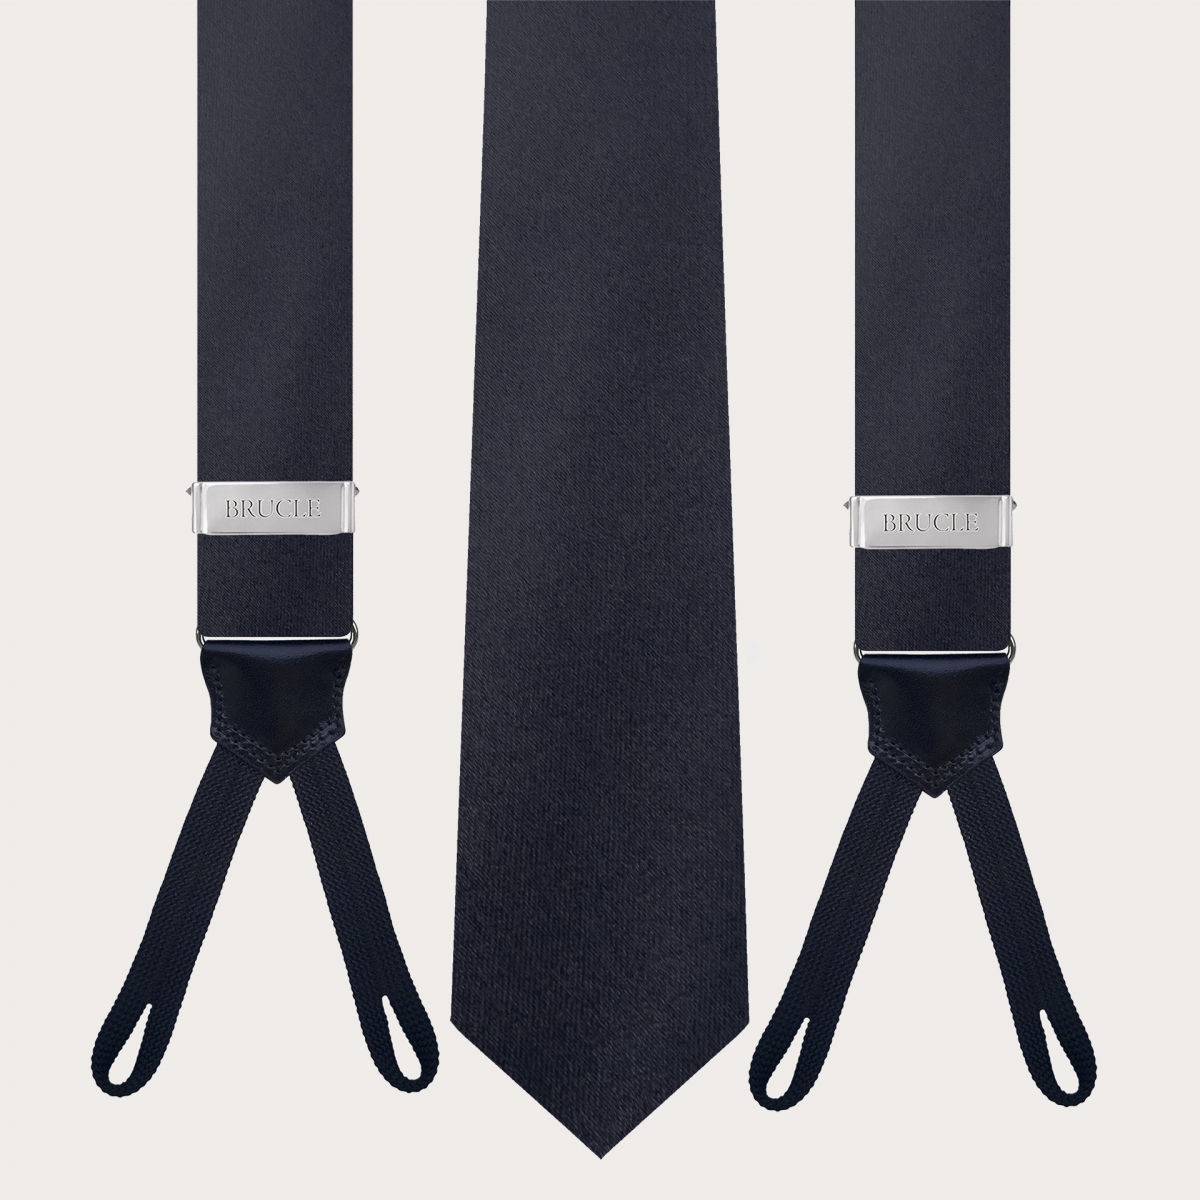 Ensemble coordonné de cravate et de bretelles pour boutons en soie bleu marine